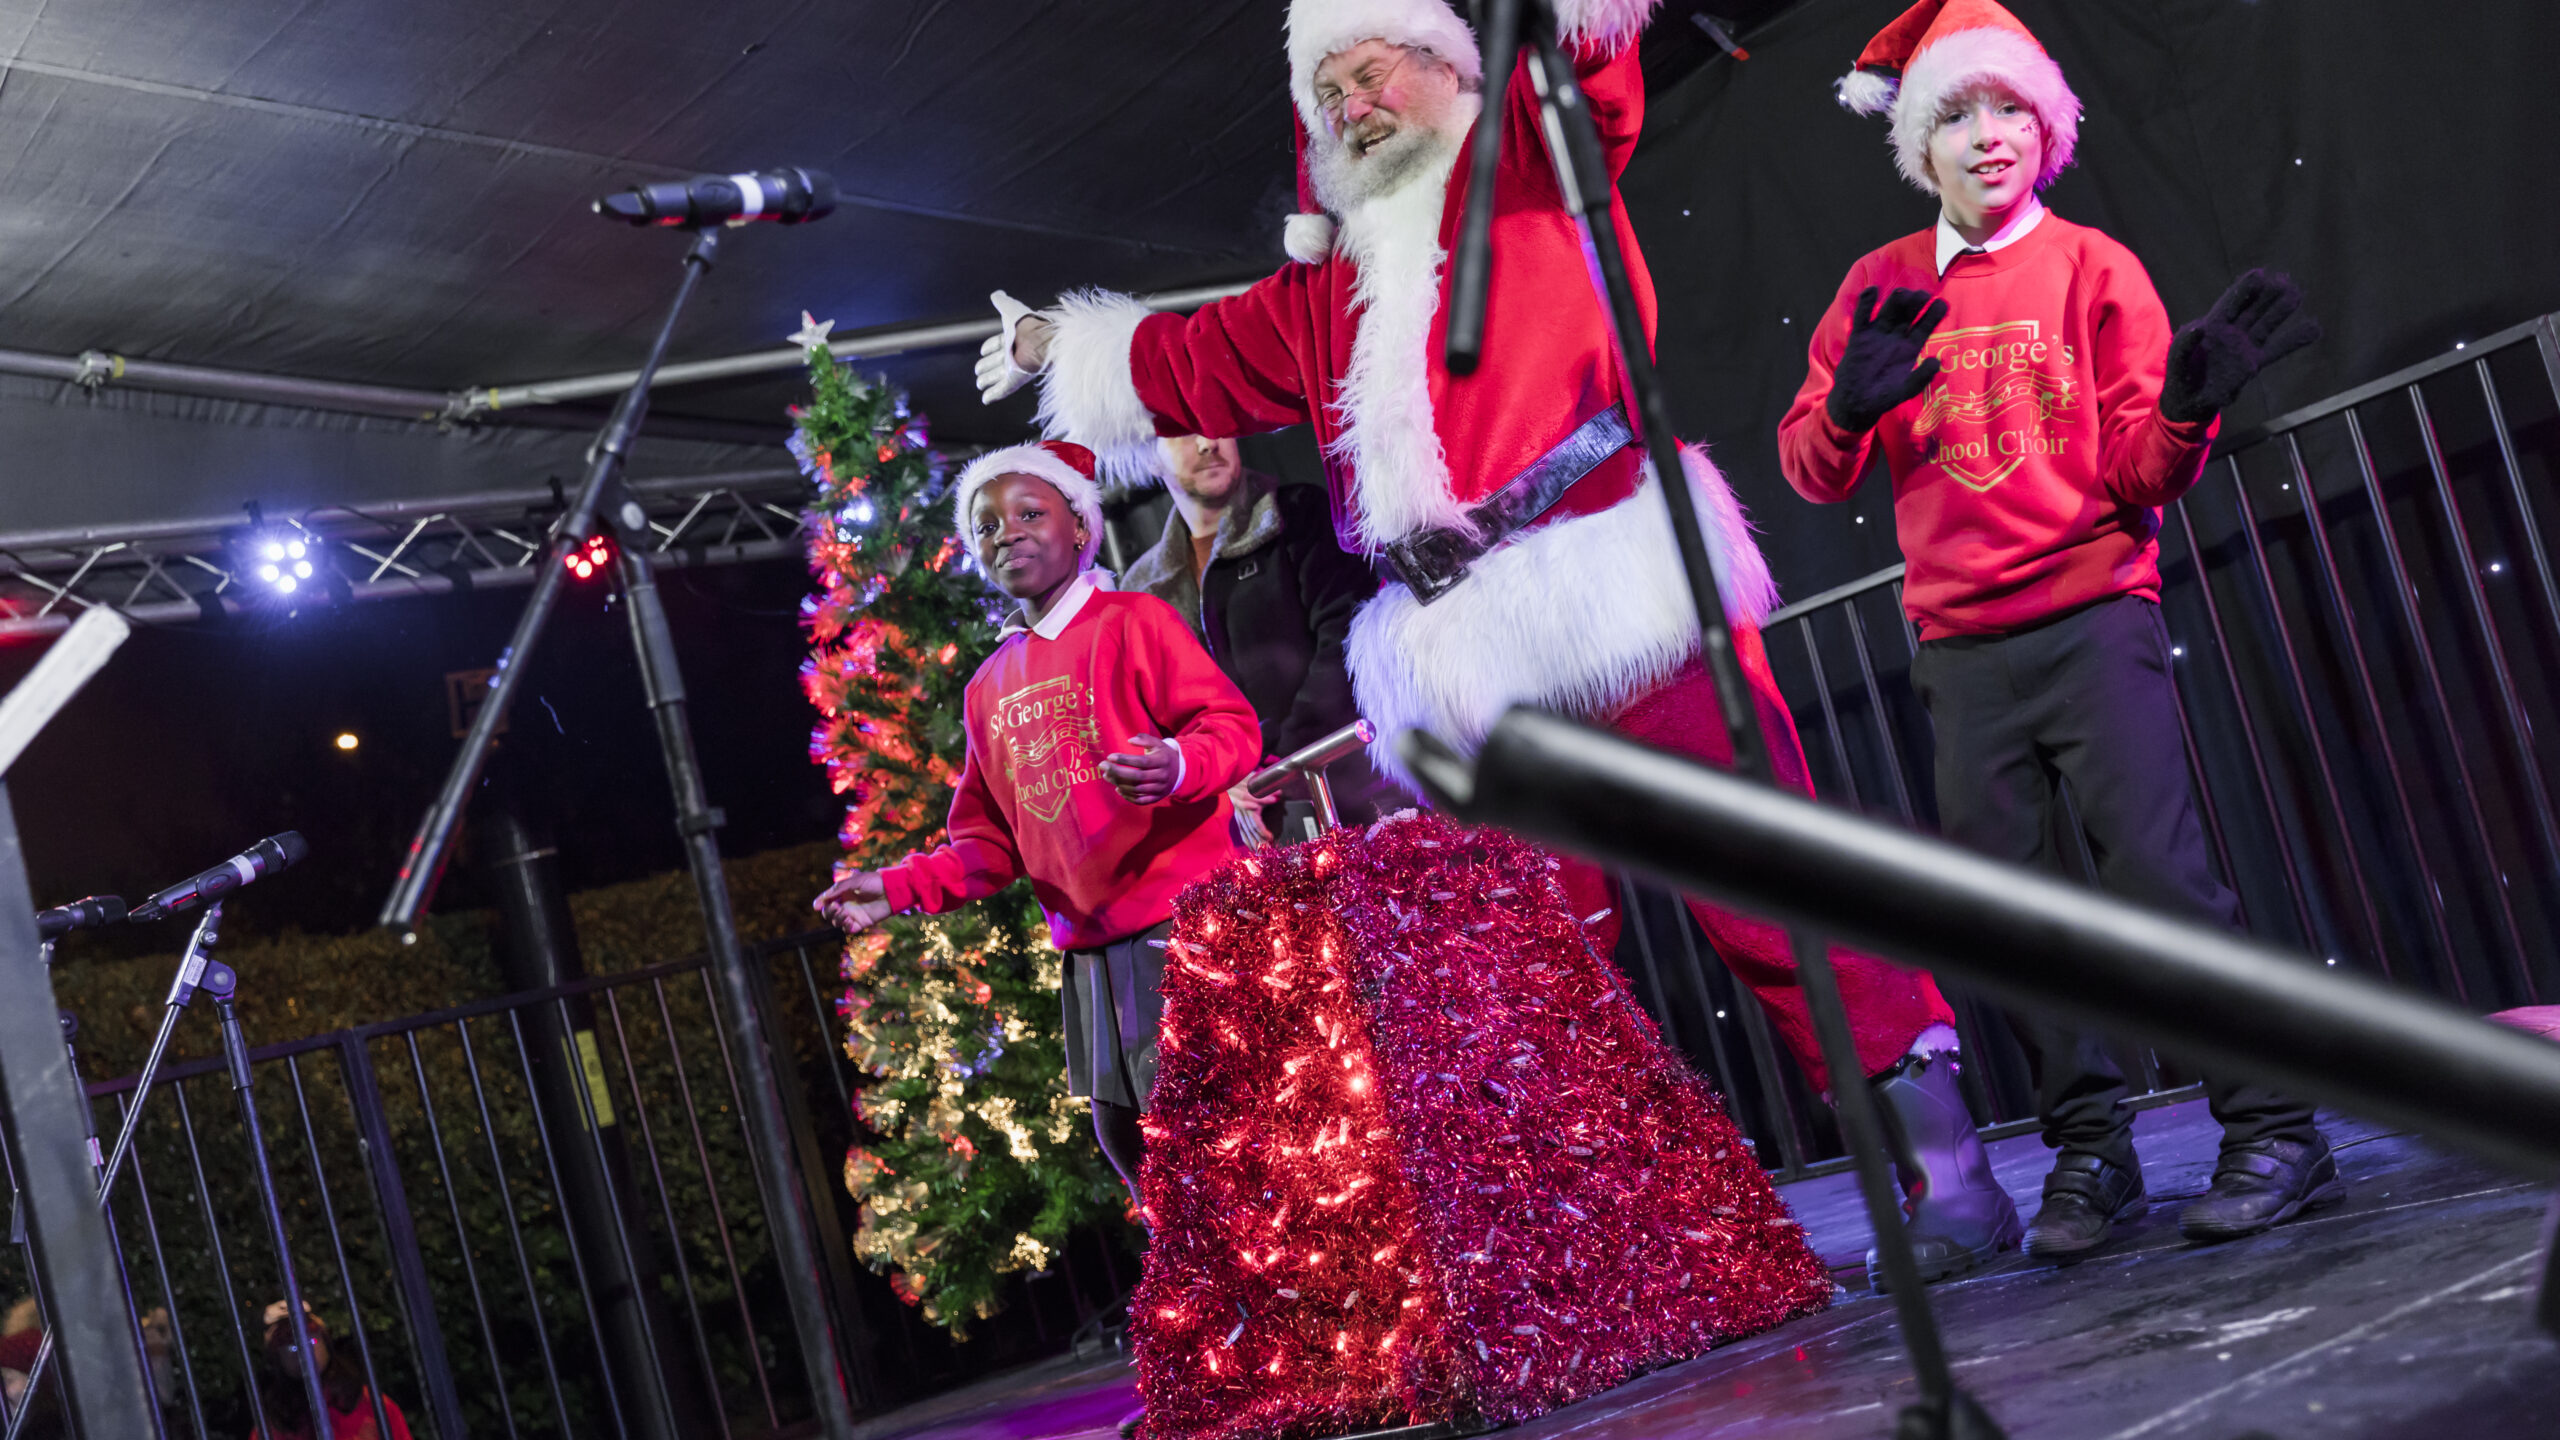 A bright Christmas – popular festive event returns to Birmingham